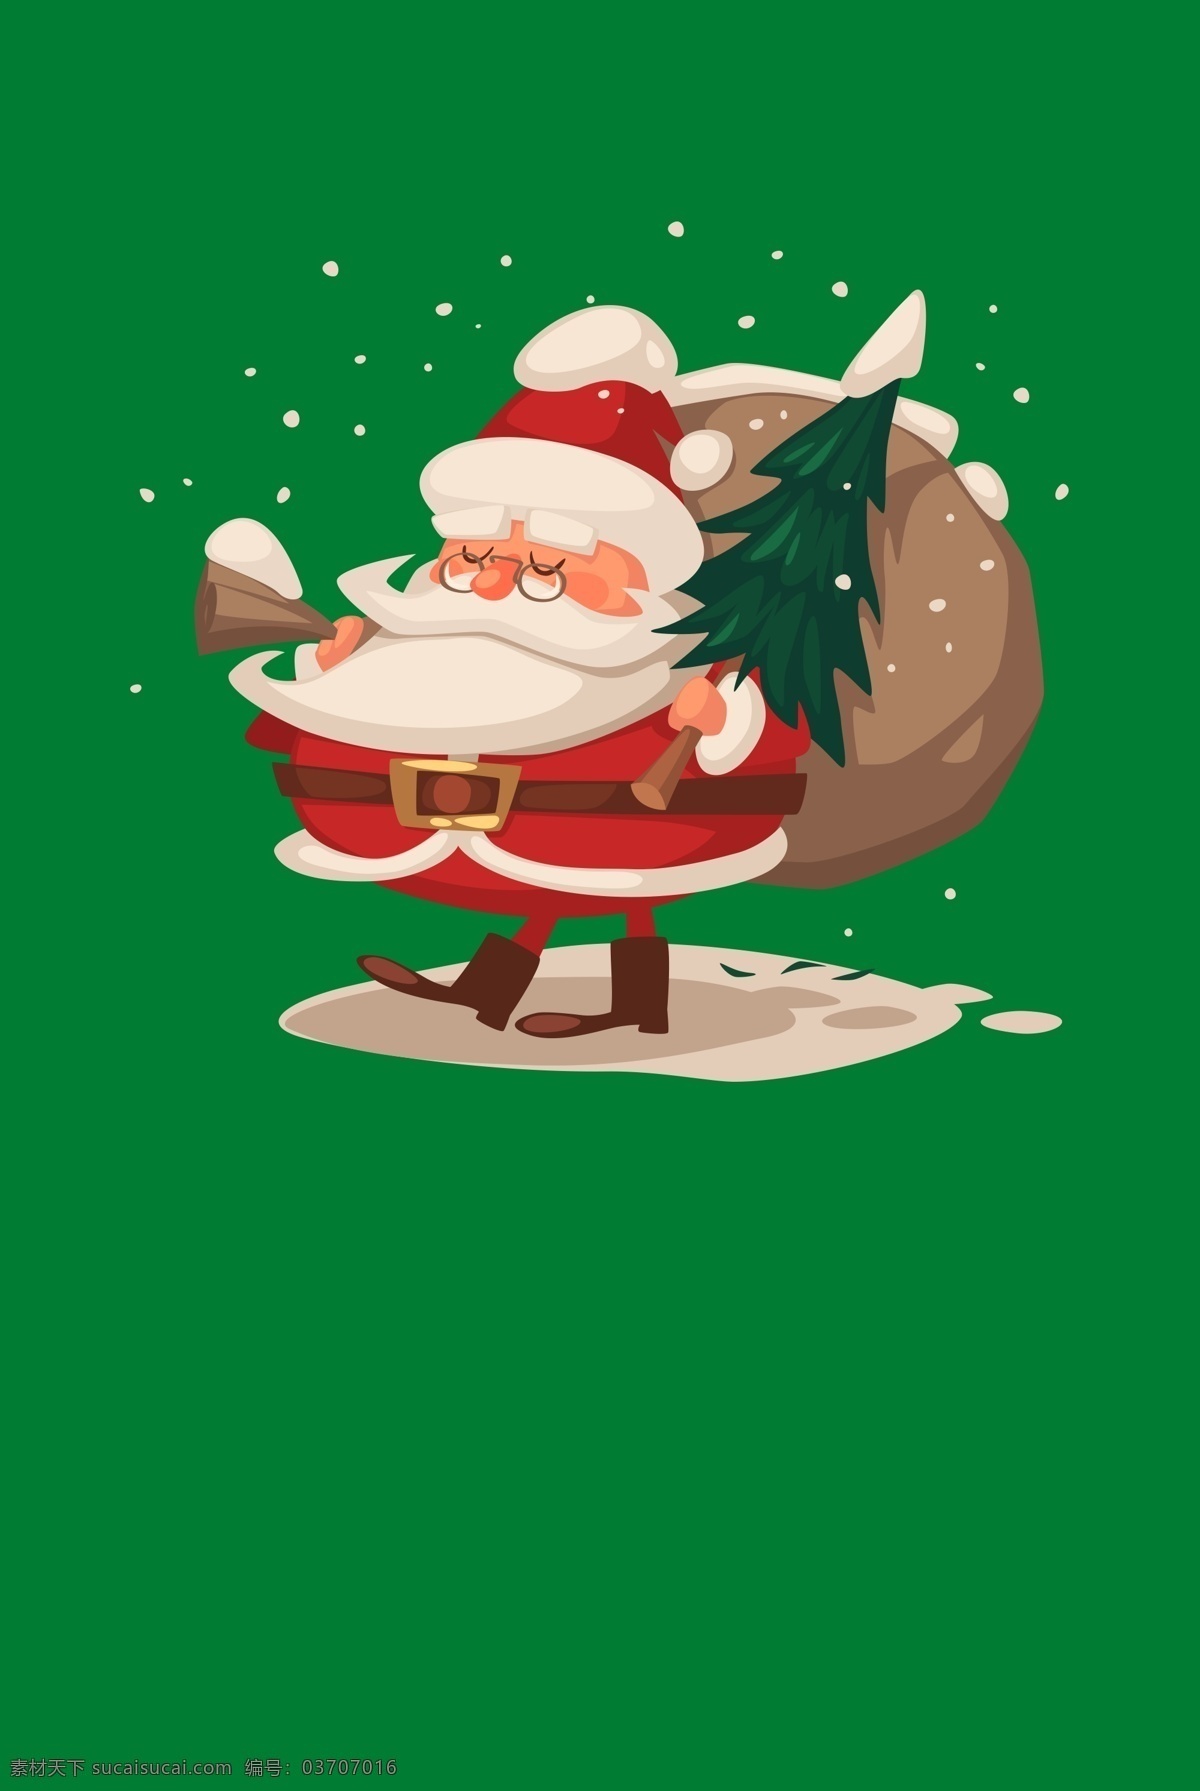 绿色 卡通 圣诞节 狂欢 海报 背景 图 冬季 边框 圣诞树 礼盒 圣诞节快乐 平安夜 圣诞礼物 棒棒糖 糖果 广告背景